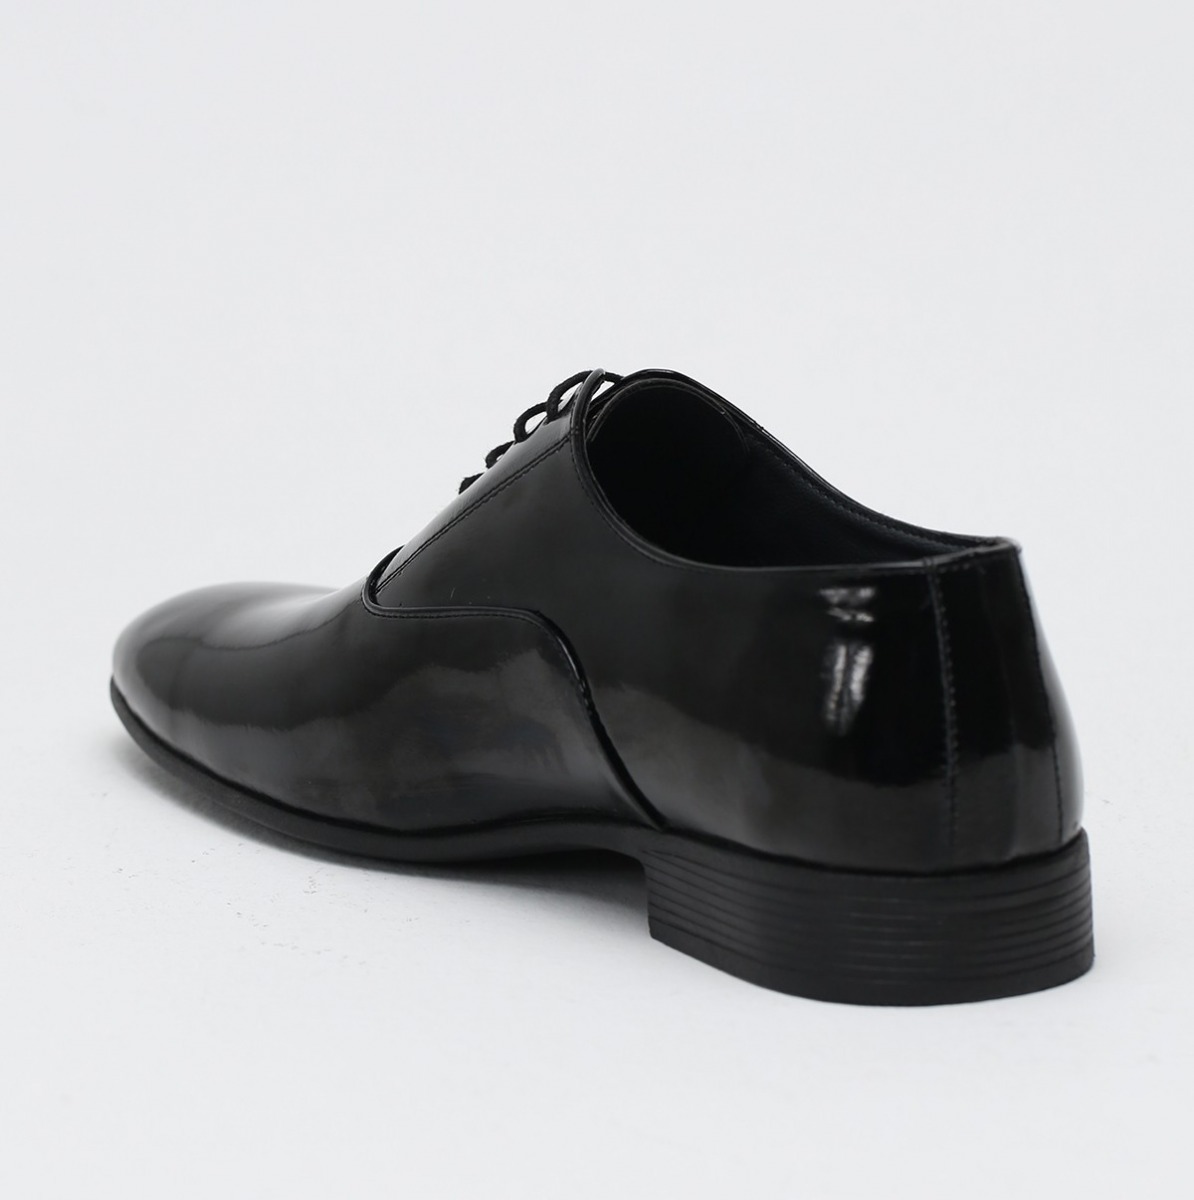 Flo Siyah Erkek Klasik Ayakkabı 1009-19-112014. 2